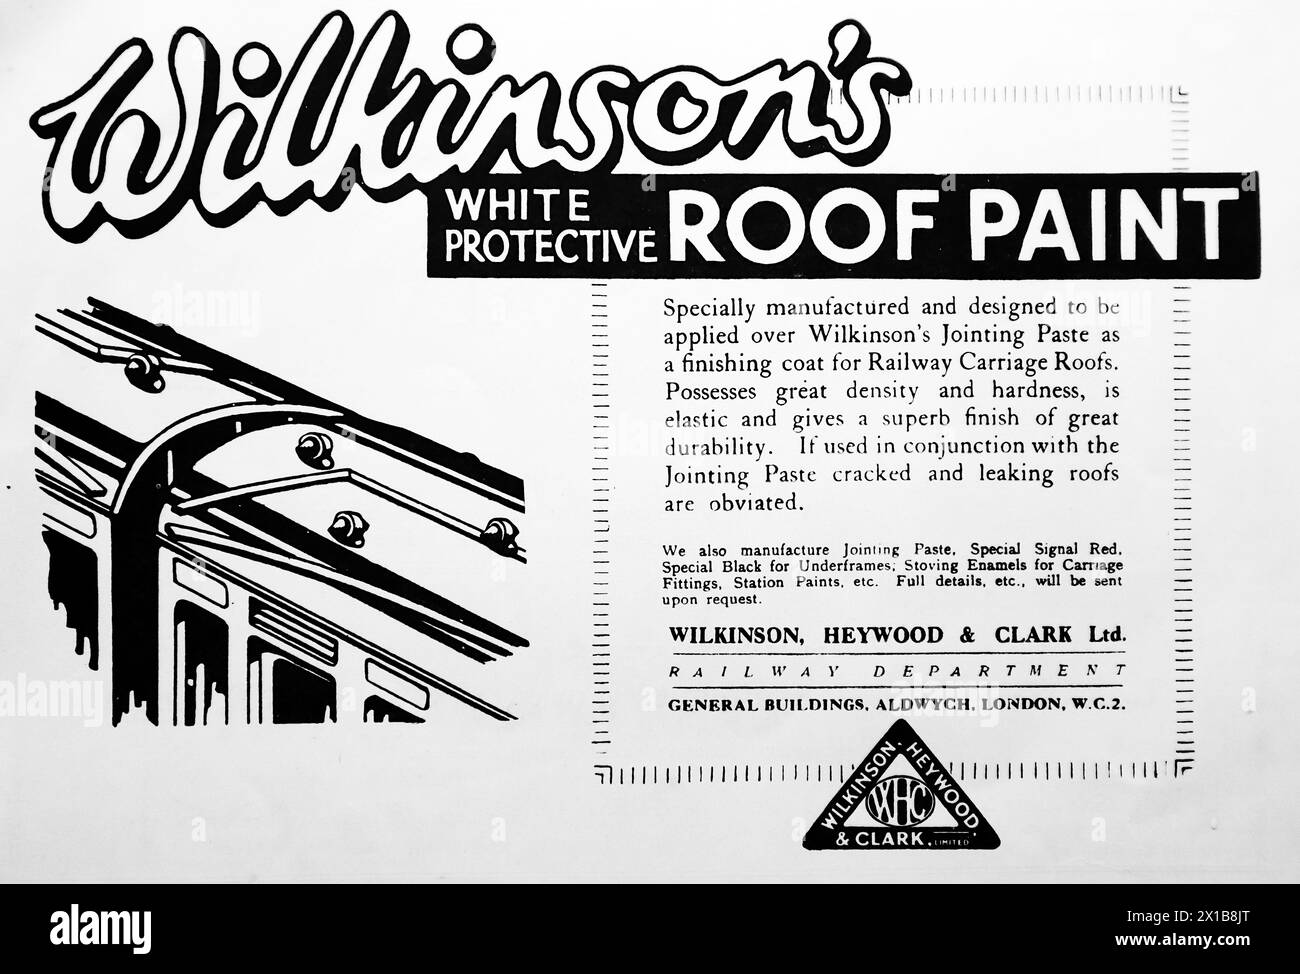 Publicité pour Wilkinson, Heywood and Clark Ltd, d'Aldwych, Londres. Peinture blanche pour toiture de protection Wilkinson, une couche de finition pour toits de wagons de chemin de fer. D’après une publication originale datée du 15 mai 1924, cela contribue à donner un aperçu des transports publics, et des chemins de fer en particulier, des années 1920 Banque D'Images